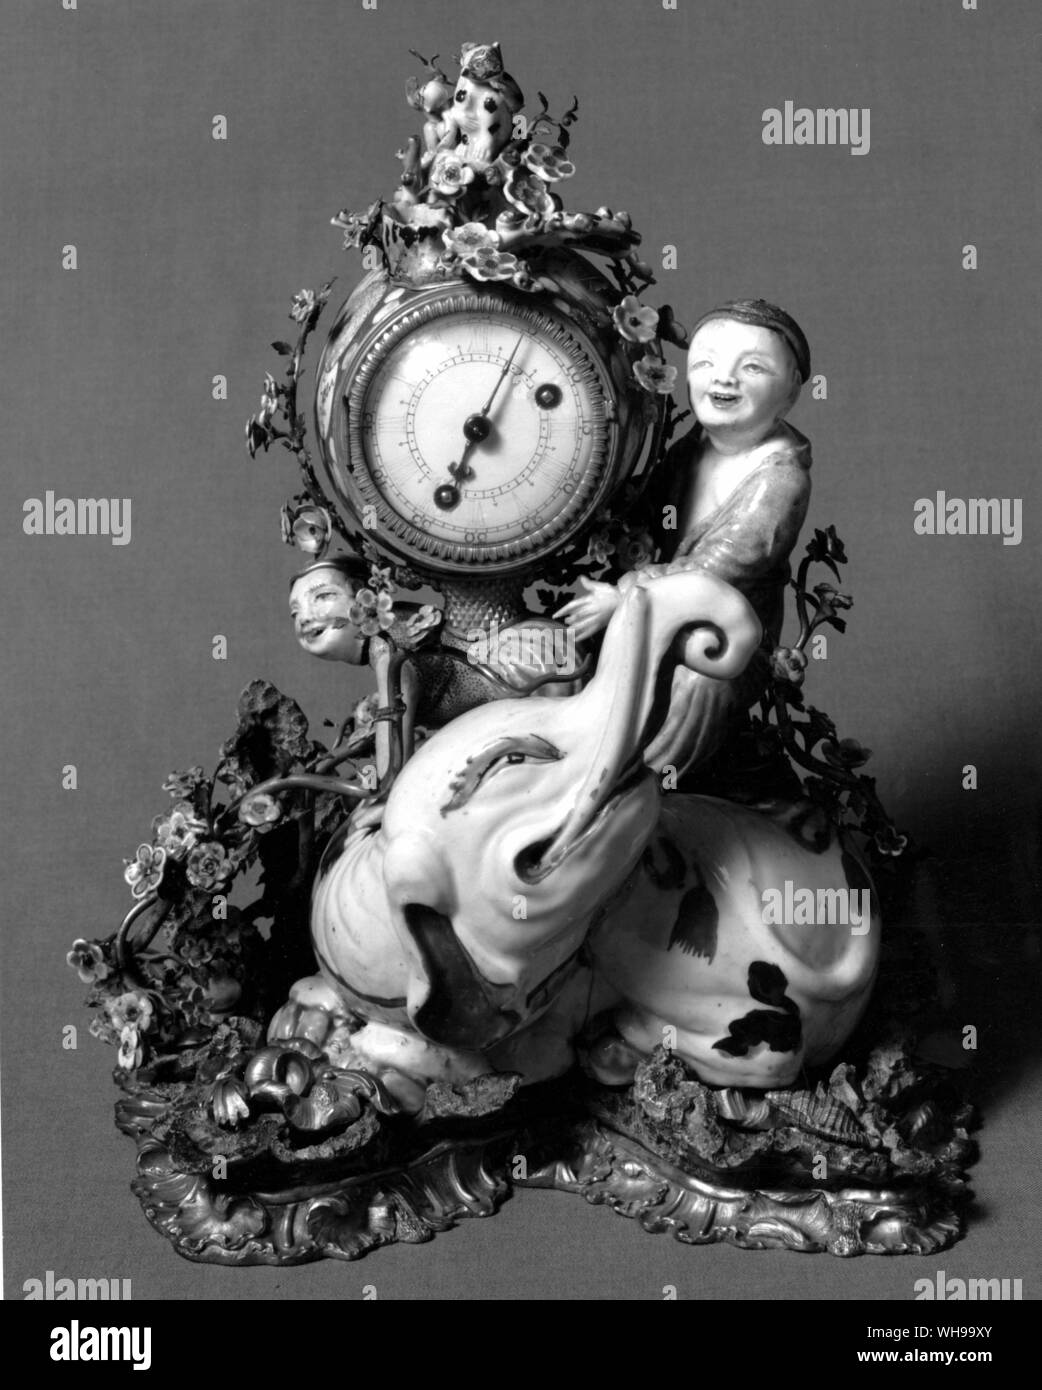 Porzellan montiert in deutscher Sprache aus dem 18. Jahrhundert Goldblech eine Uhr zu halten. Der Elefant ist aus dem 17. Jahrhundert Japanisch, die Jungs sind aus dem 18. Jahrhundert Chinesische und die Blüten sind Meißen oder Vincennes Stockfoto